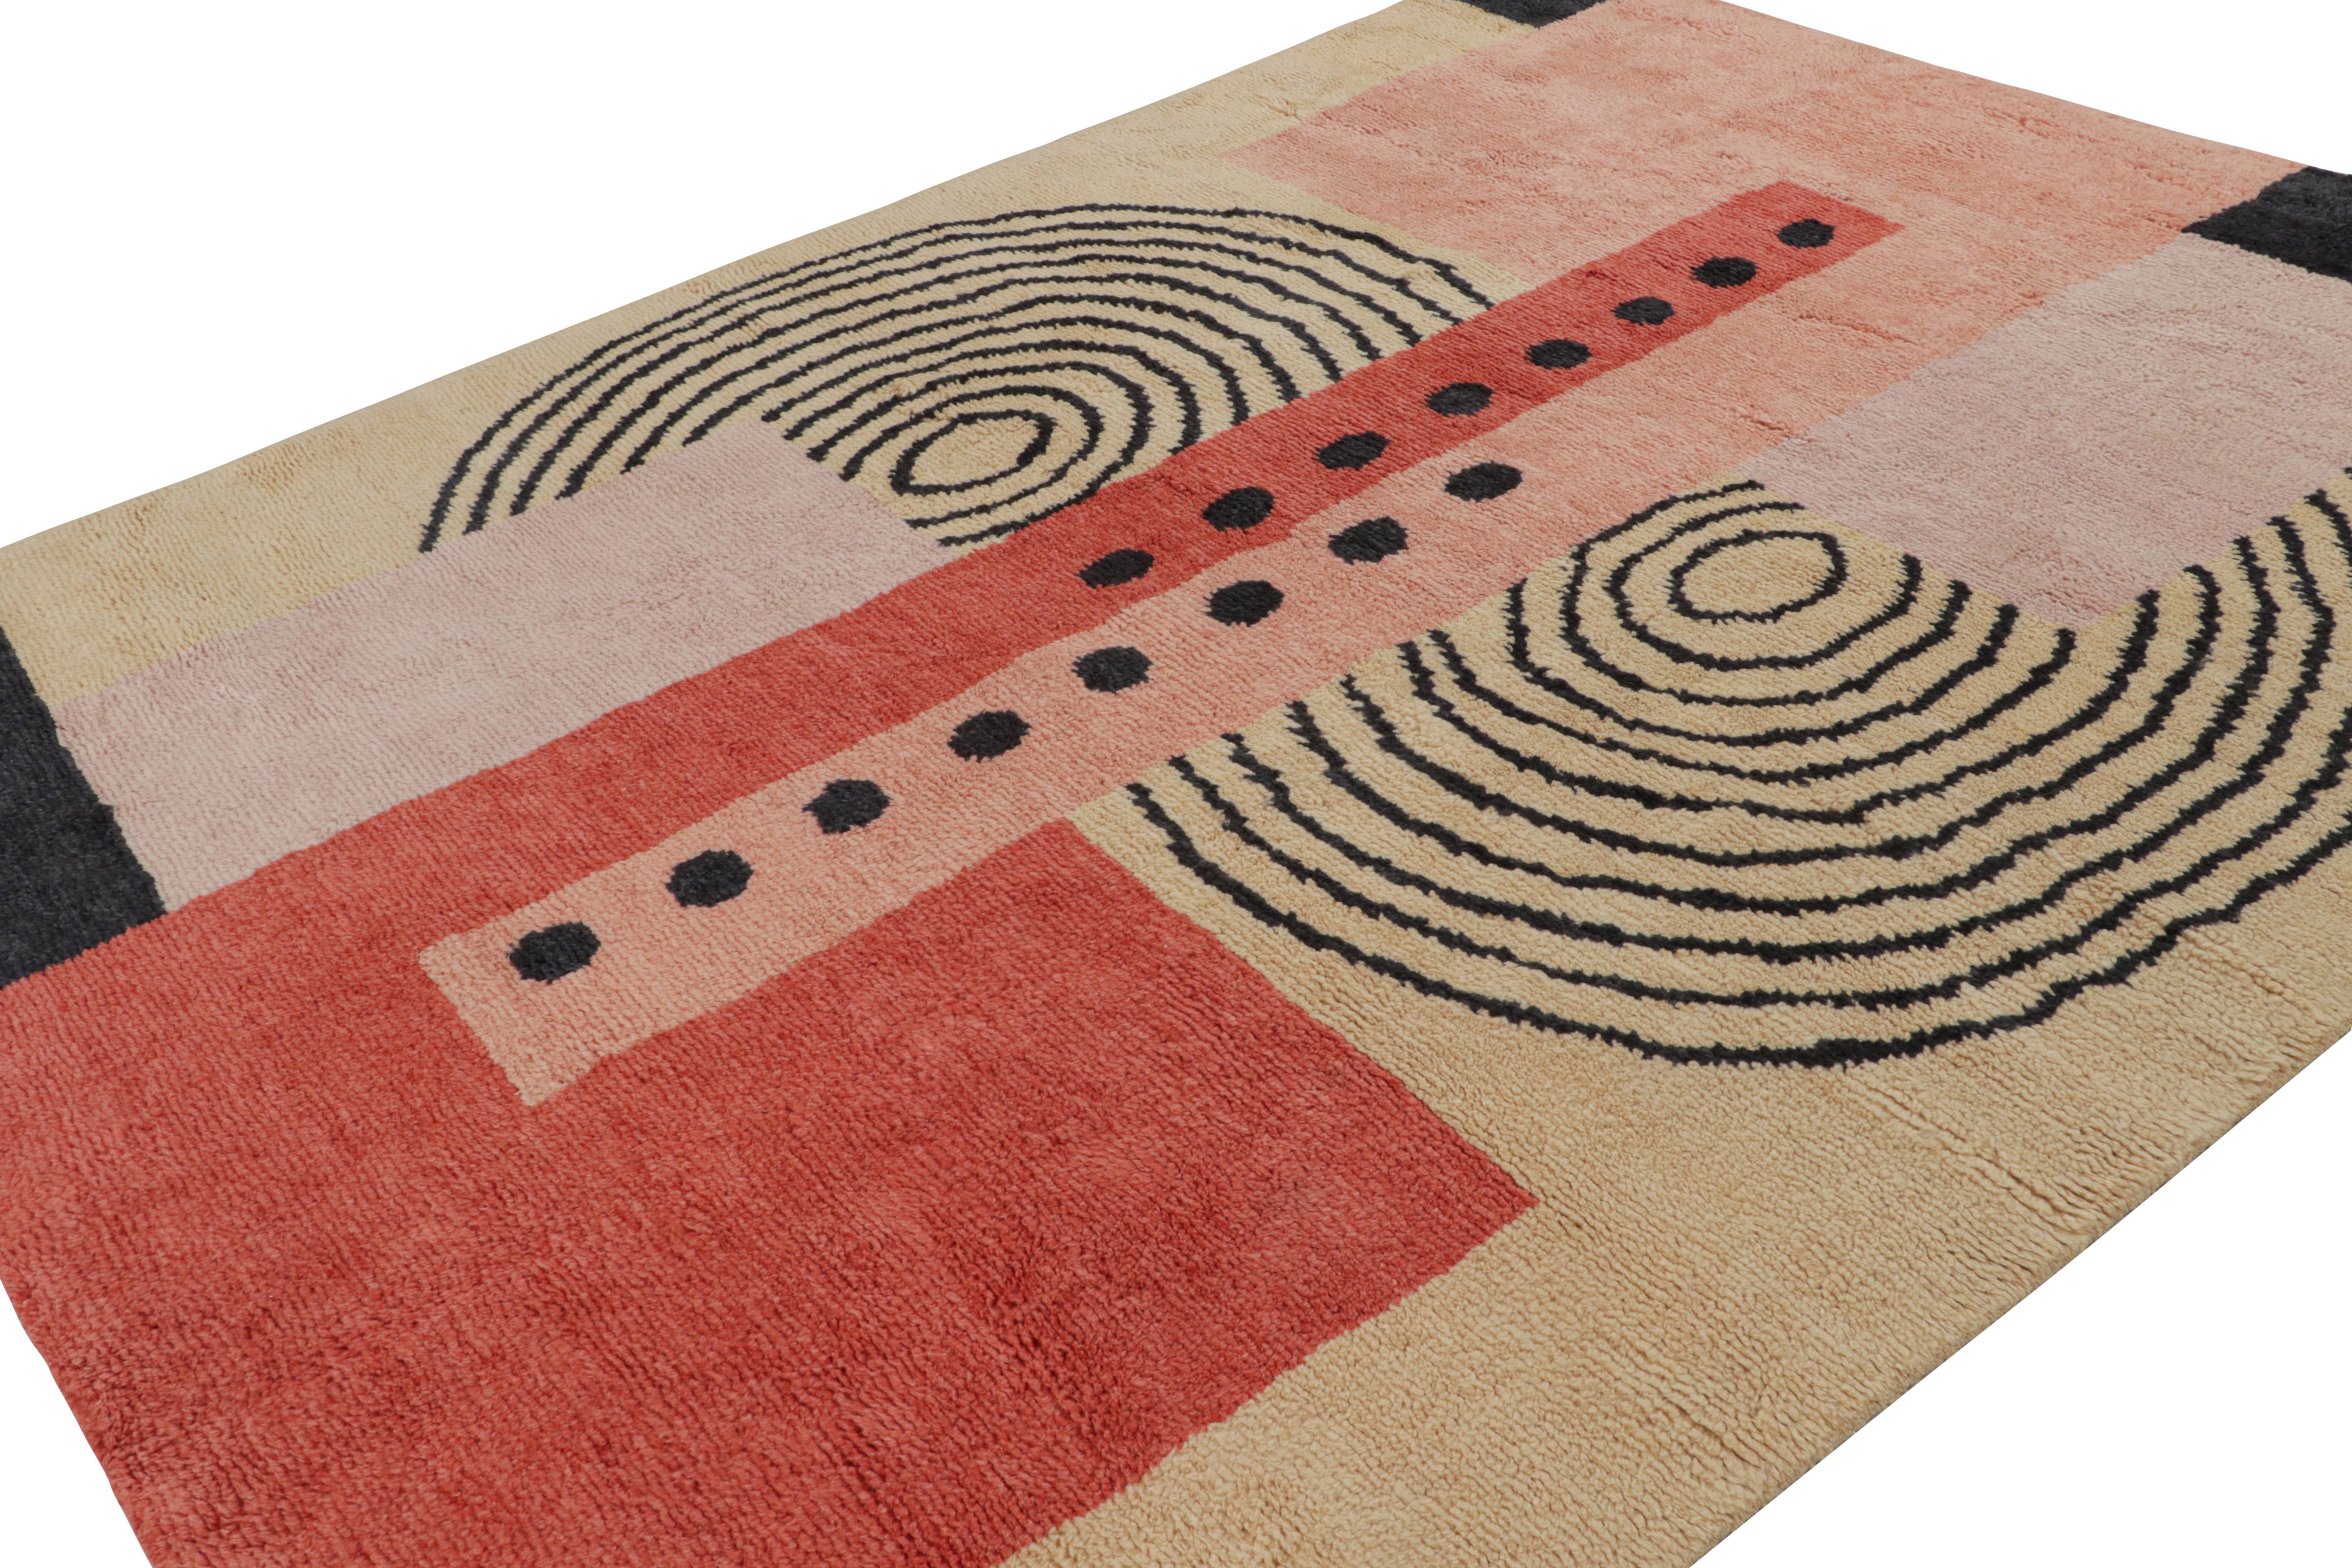 Noué à la main en laine, ce tapis Art déco français 8x10 originaire d'Inde présente des motifs géométriques roses et noirs dans un jeu de sensibilité cubiste avec des cercles concentriques. 

Sur le Design : 

Cette pièce moderne a été inspirée par